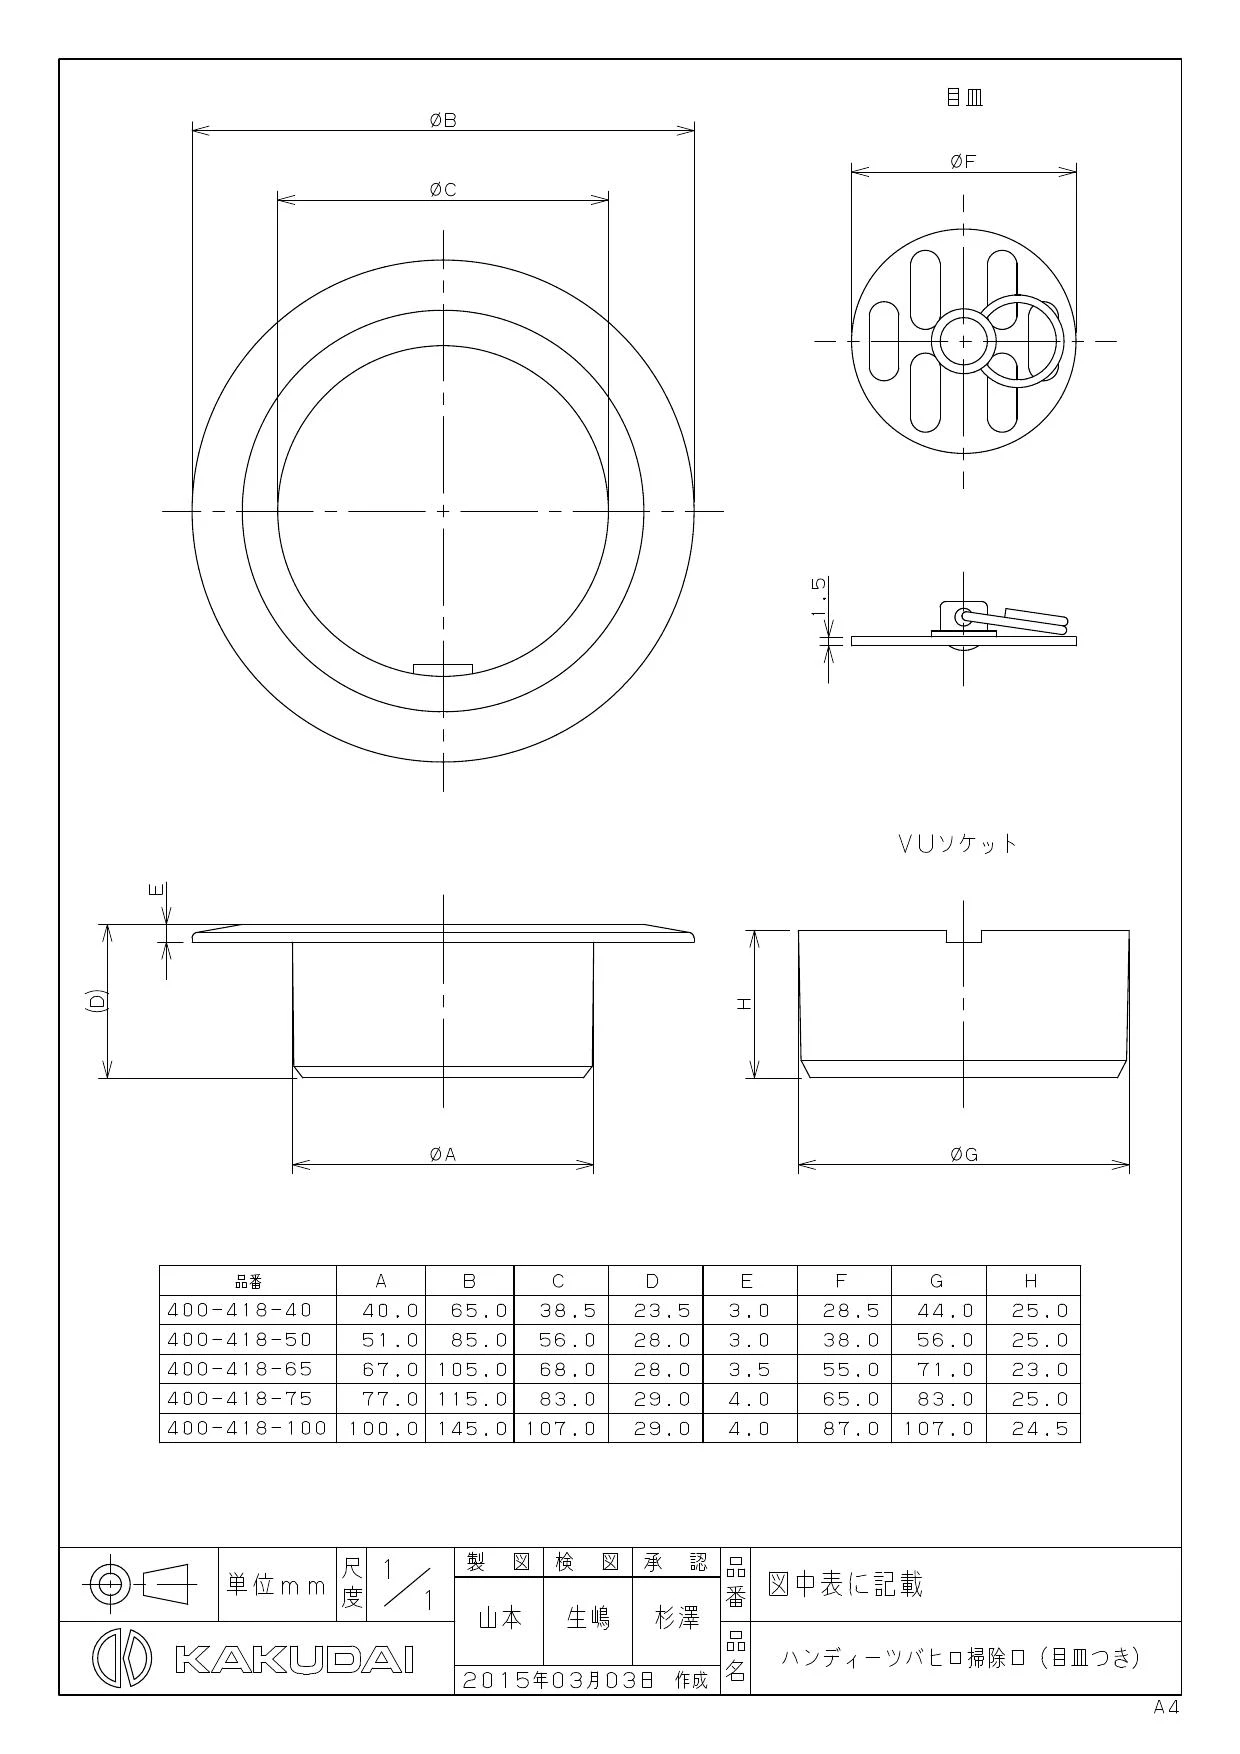 400-418-75 商品図面|カクダイ 排水金具の通販はプロストア ダイレクト